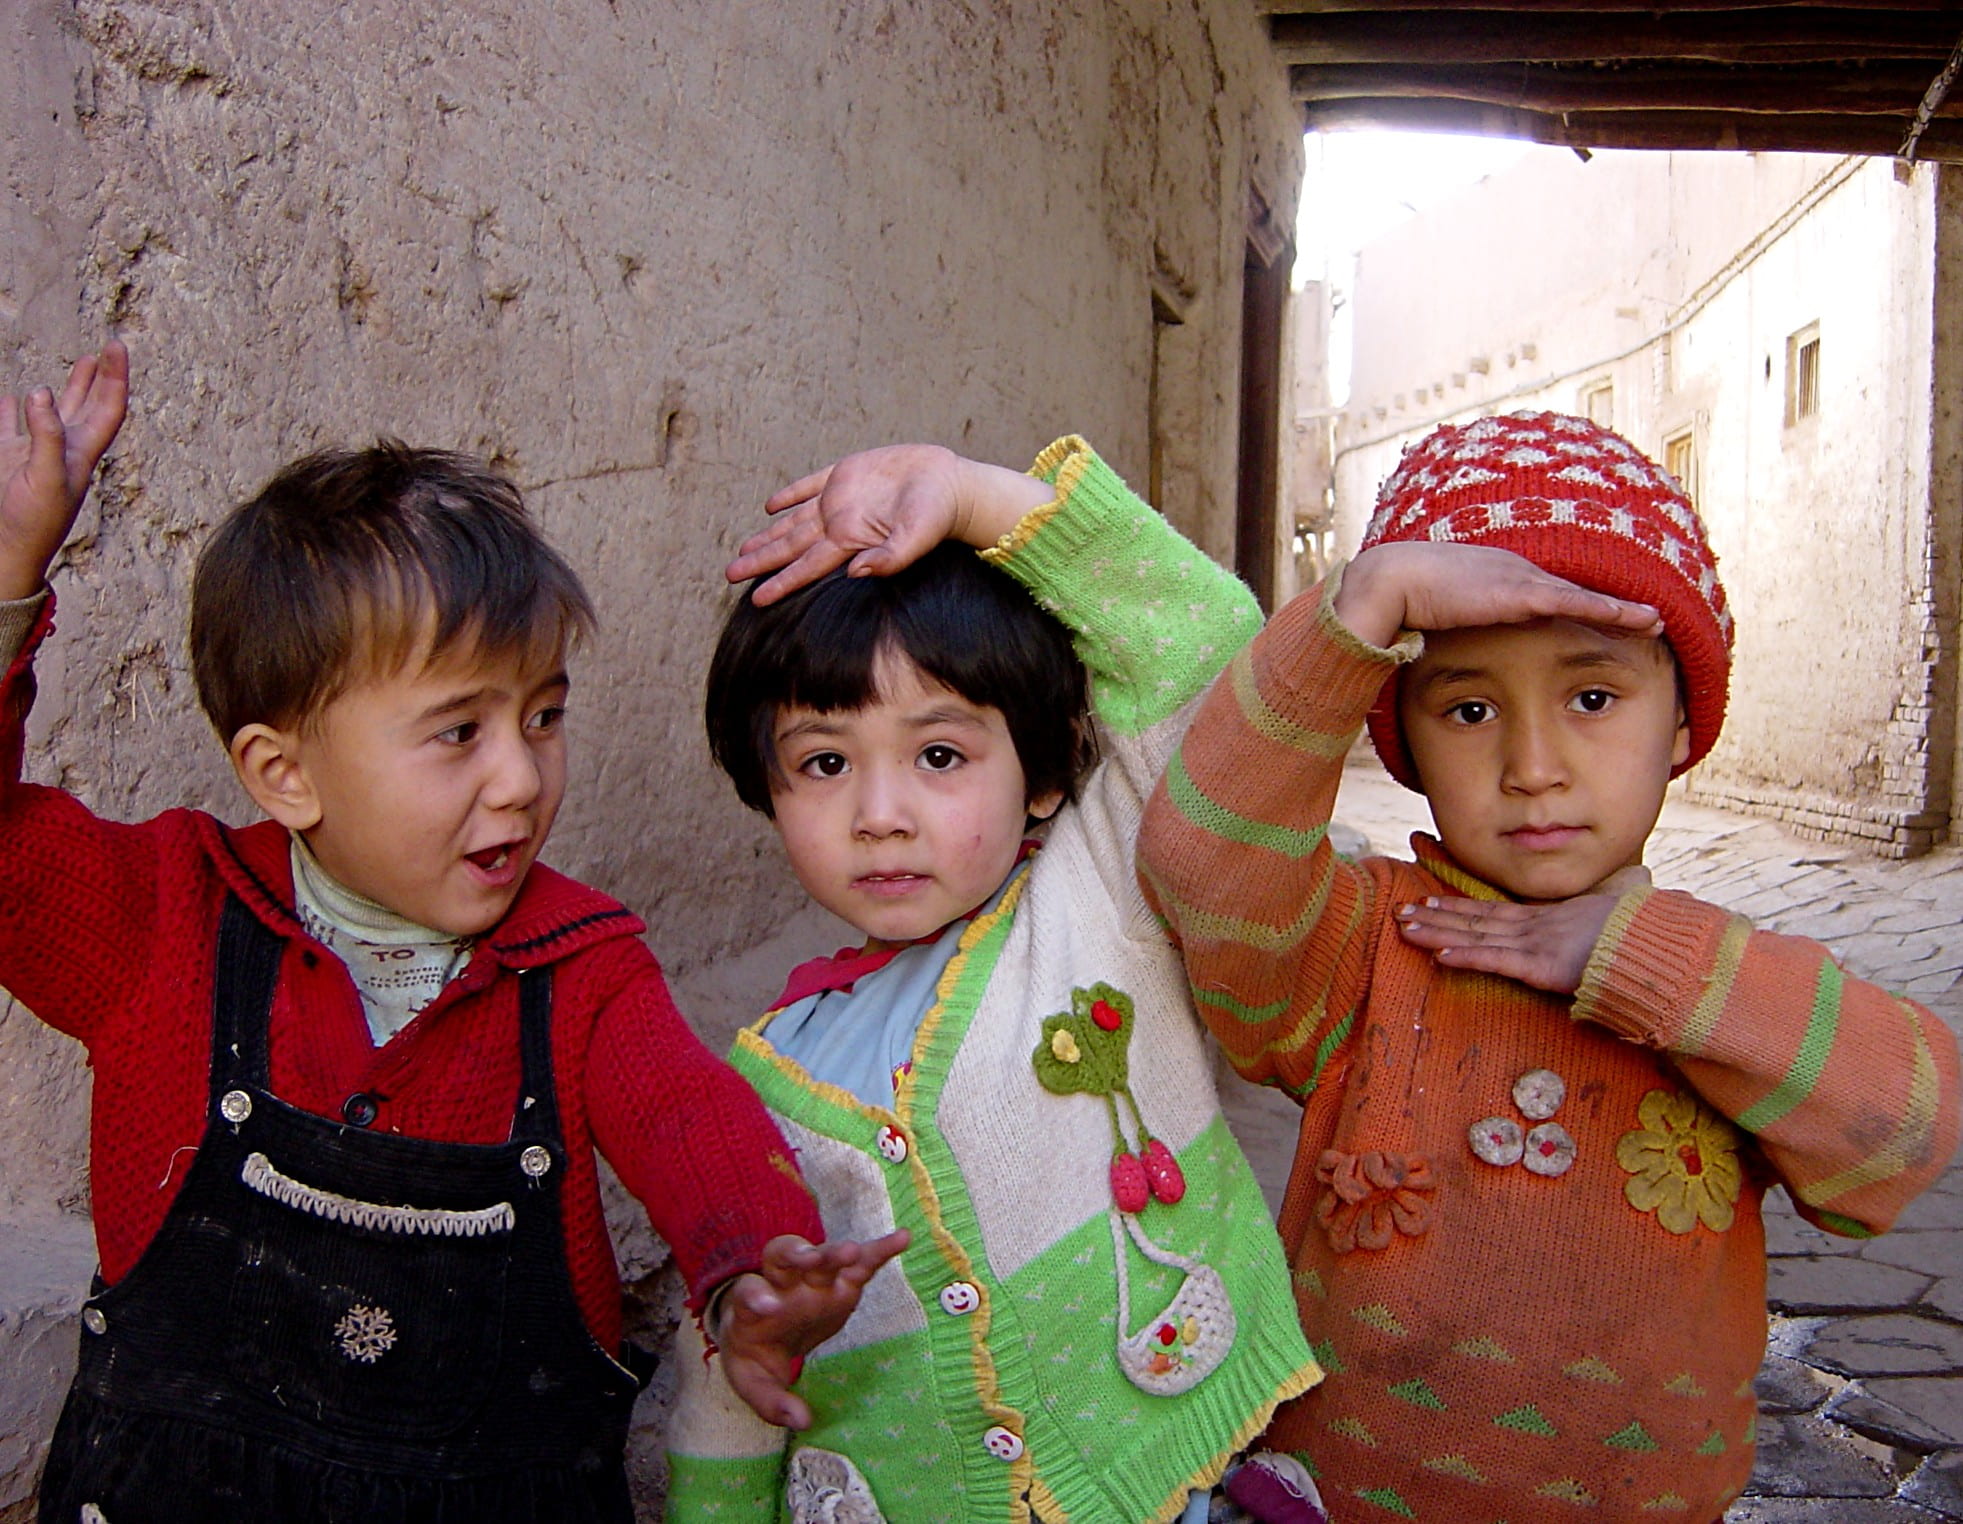 Uyghur children in old town Kashgar, China.